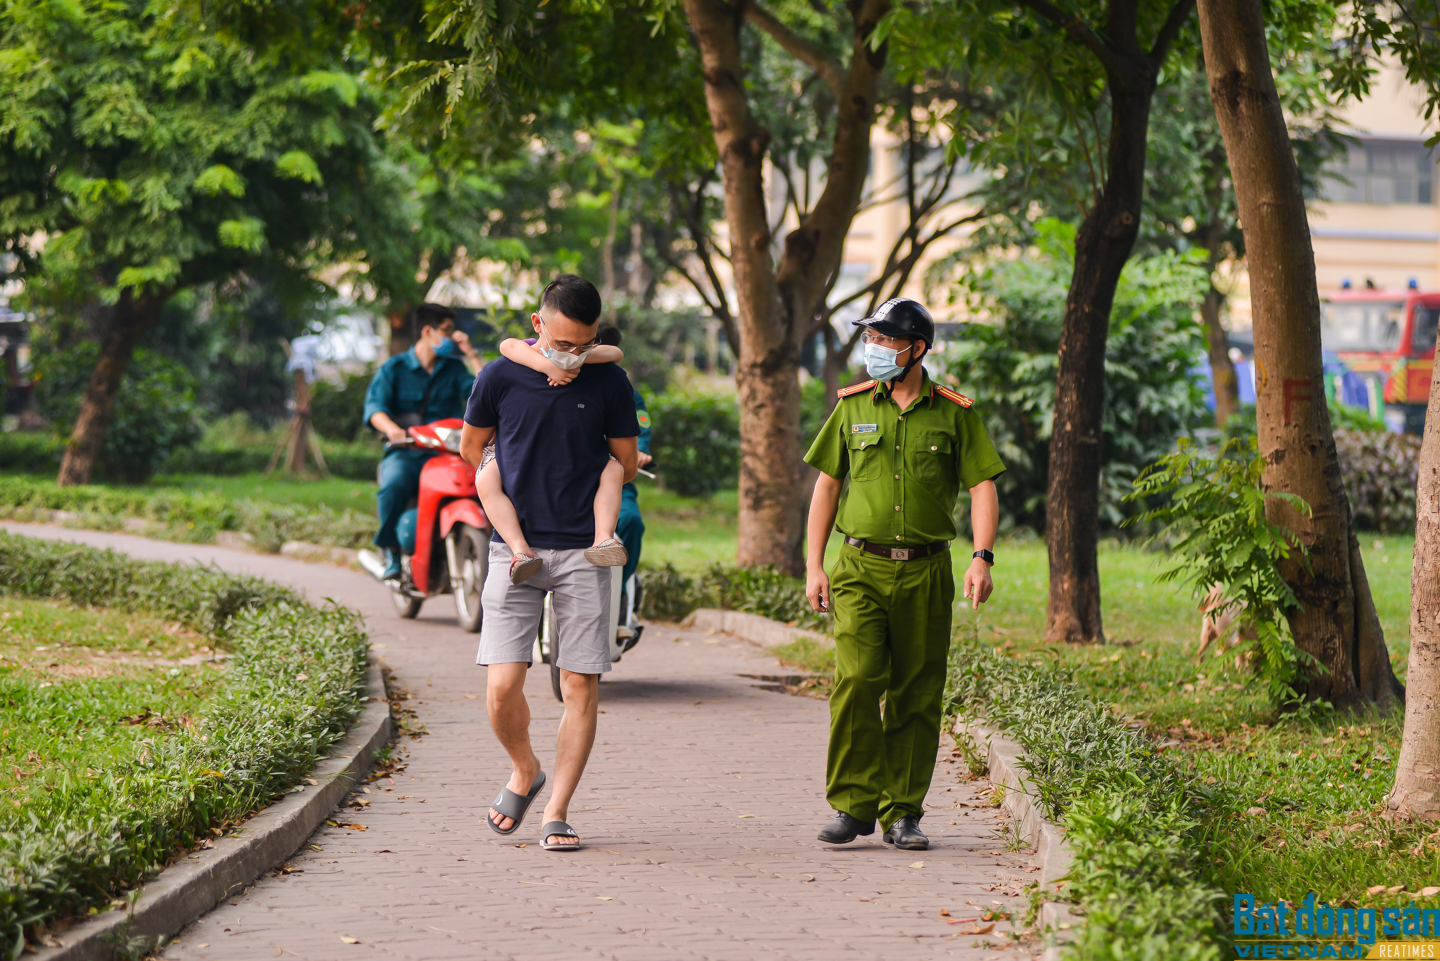 Người dân Hà Nội tập thể dục tại công viên bất chấp lệnh cấm